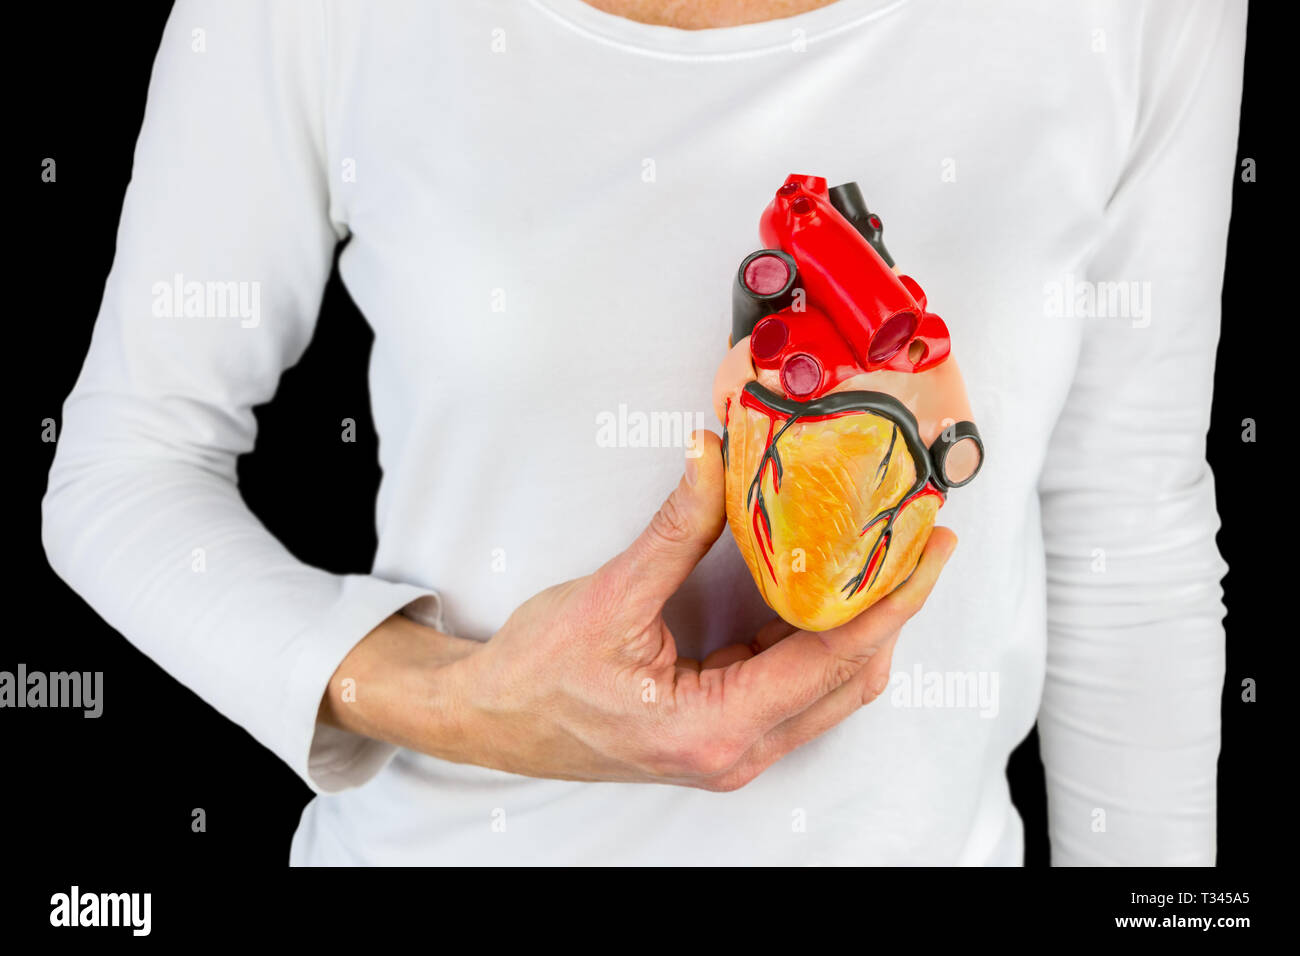 Weibliche Hand hält menschlichen Herzen Modell vor der weißen Körper auf schwarzem Hintergrund Stockfoto